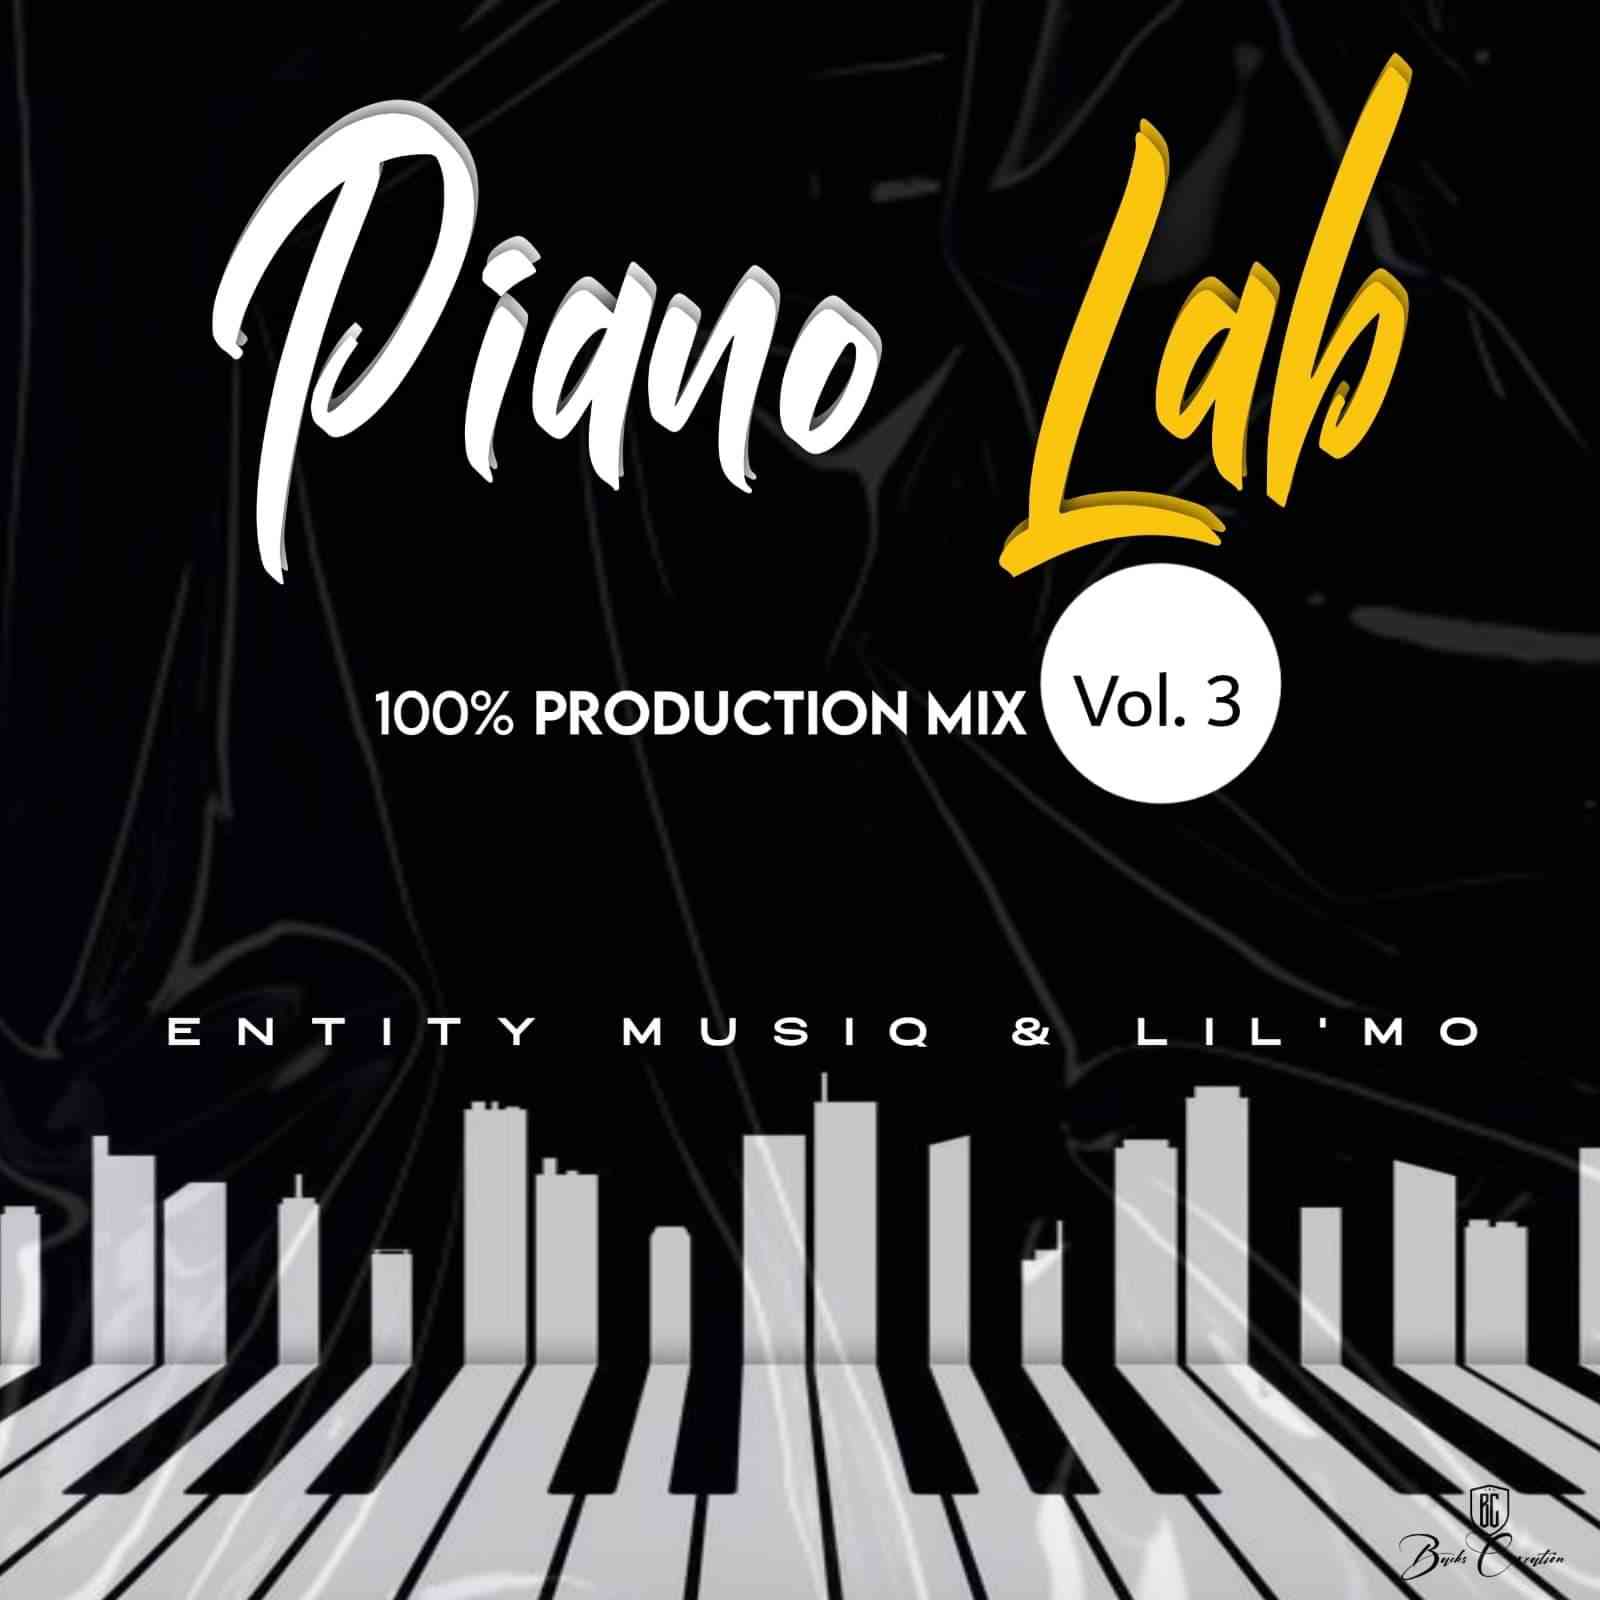 Entity MusiQ & LilMo Piano Lab Vol 3 (100% Production Mix)